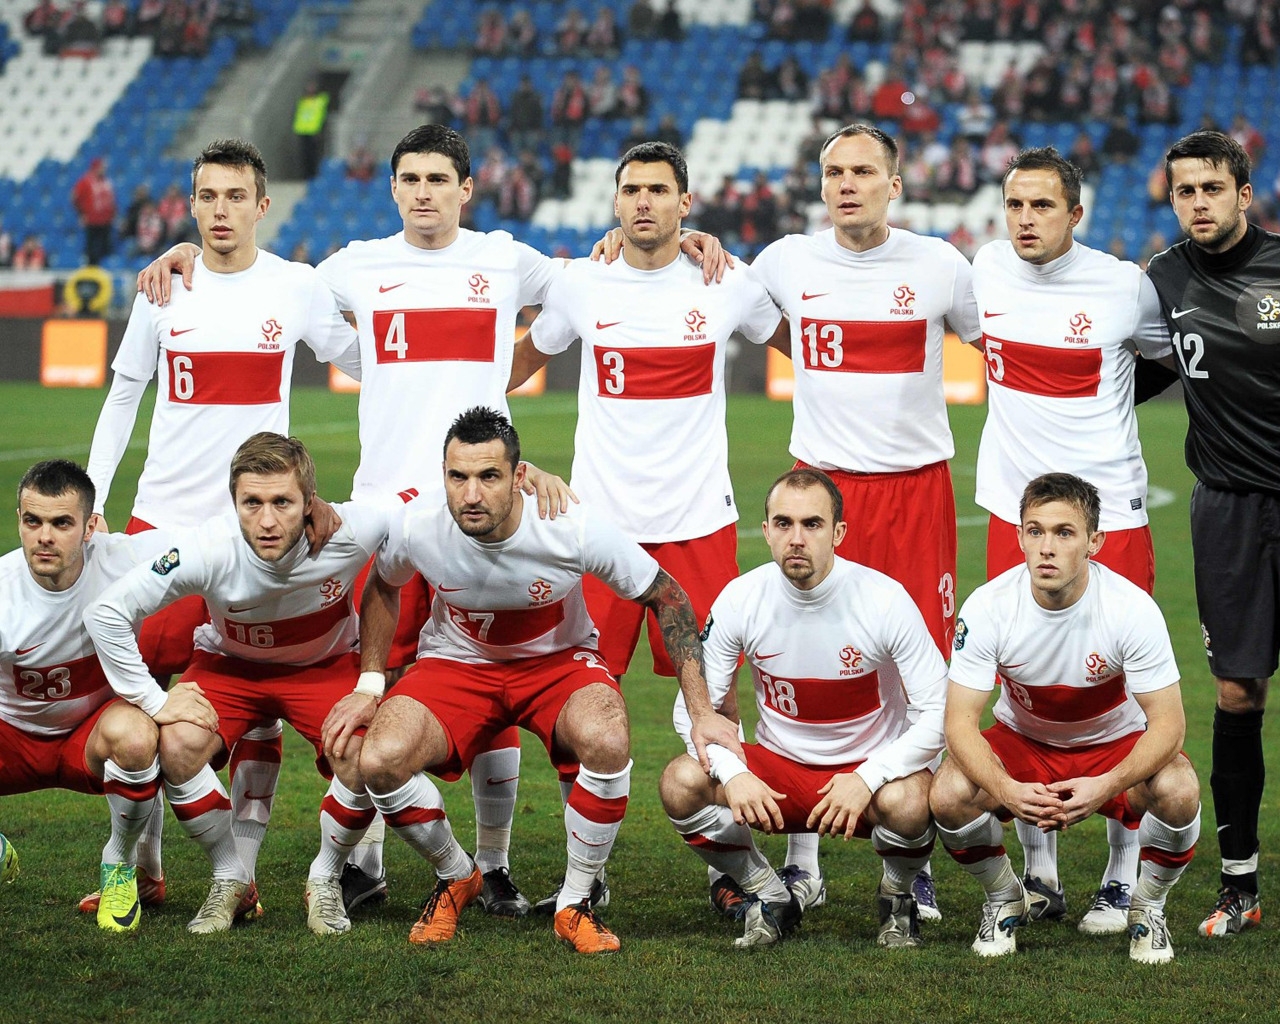 Polska National Team for 1280 x 1024 resolution